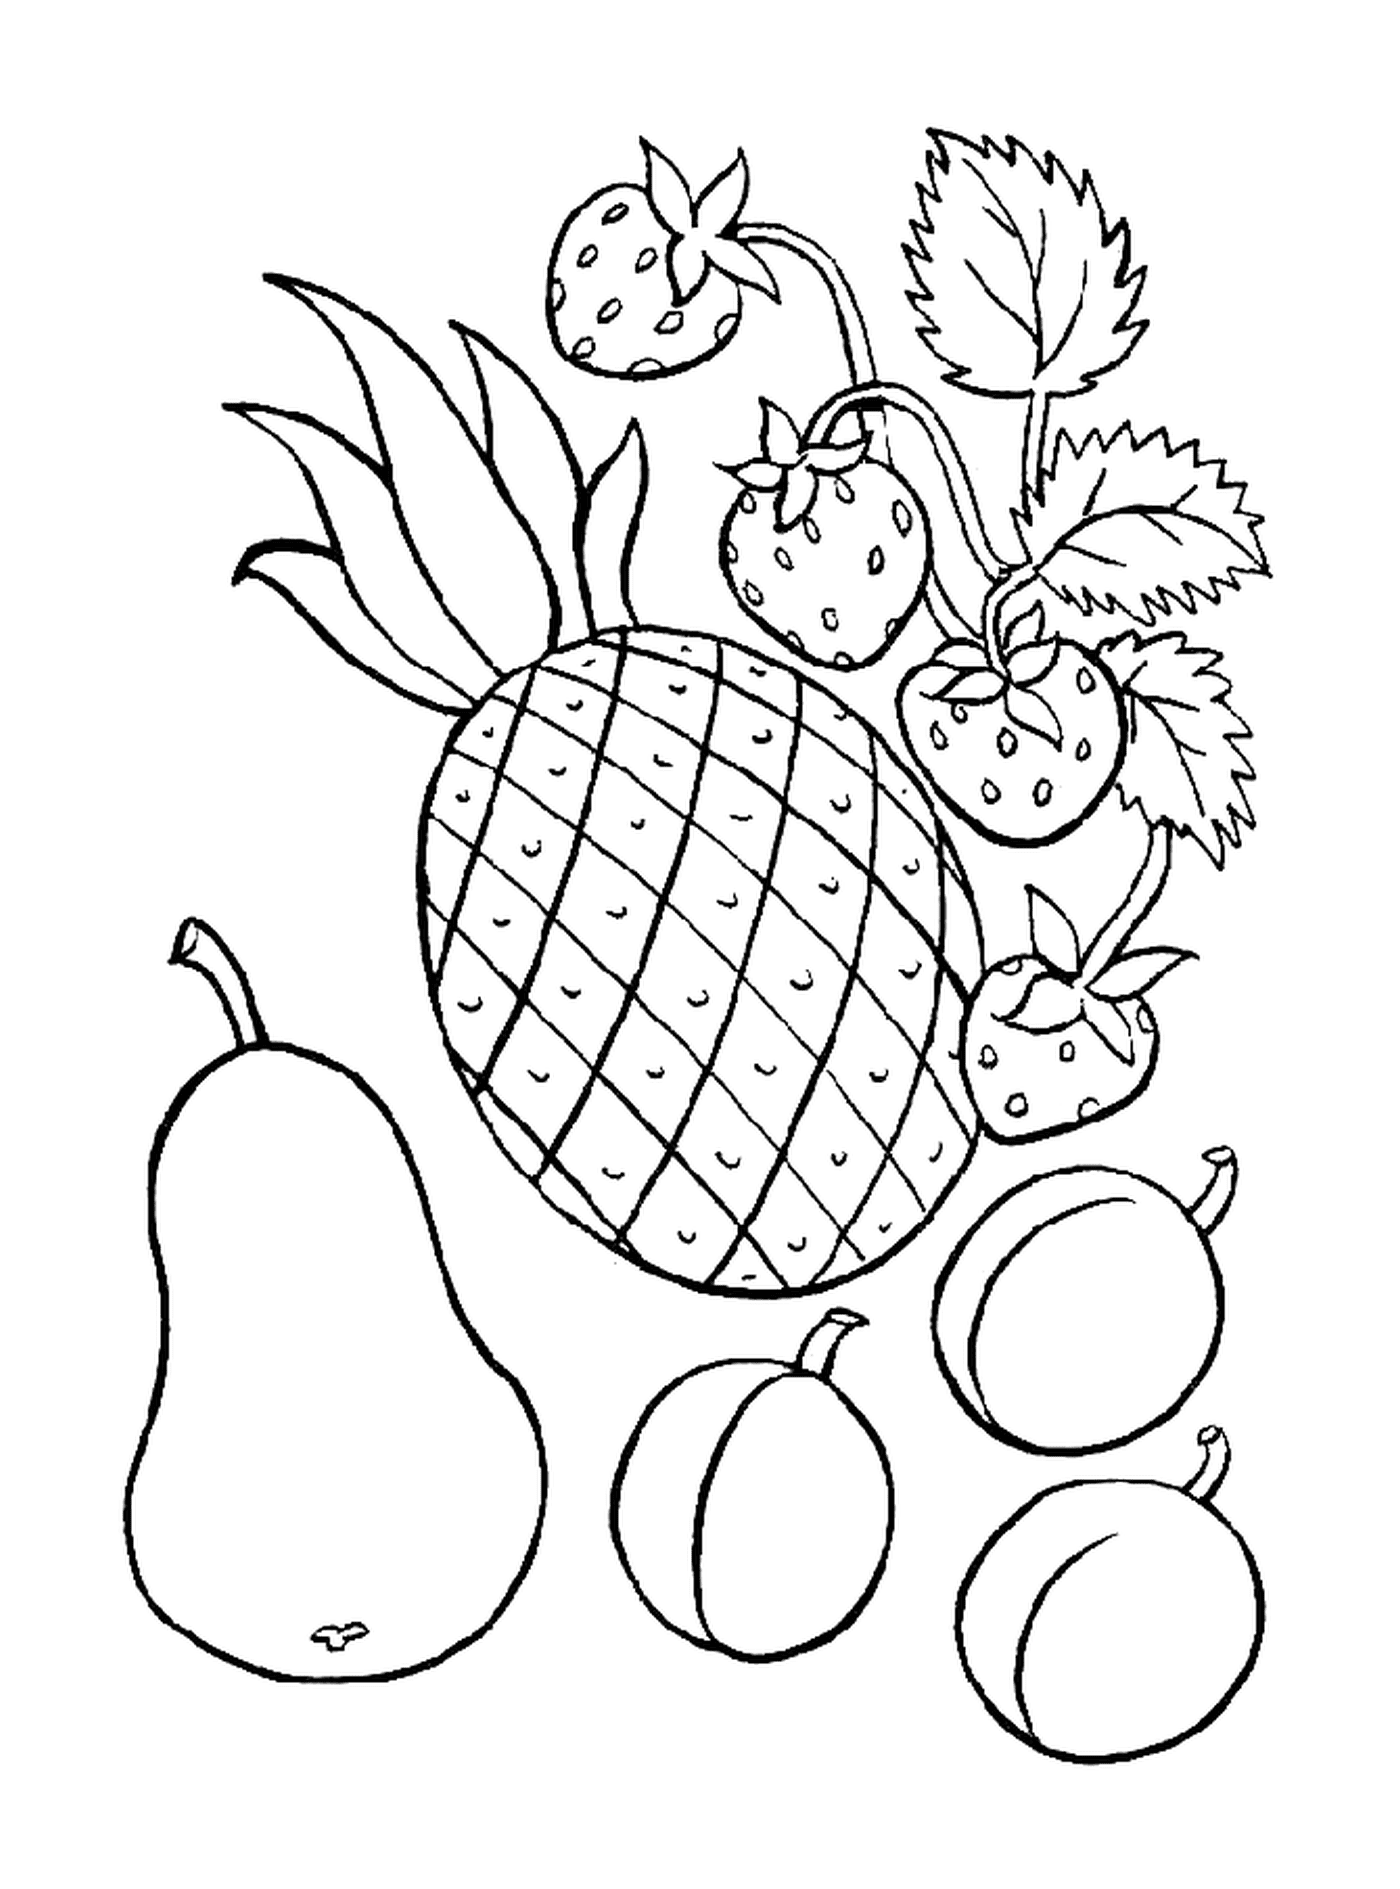  Ananas e altri frutti 